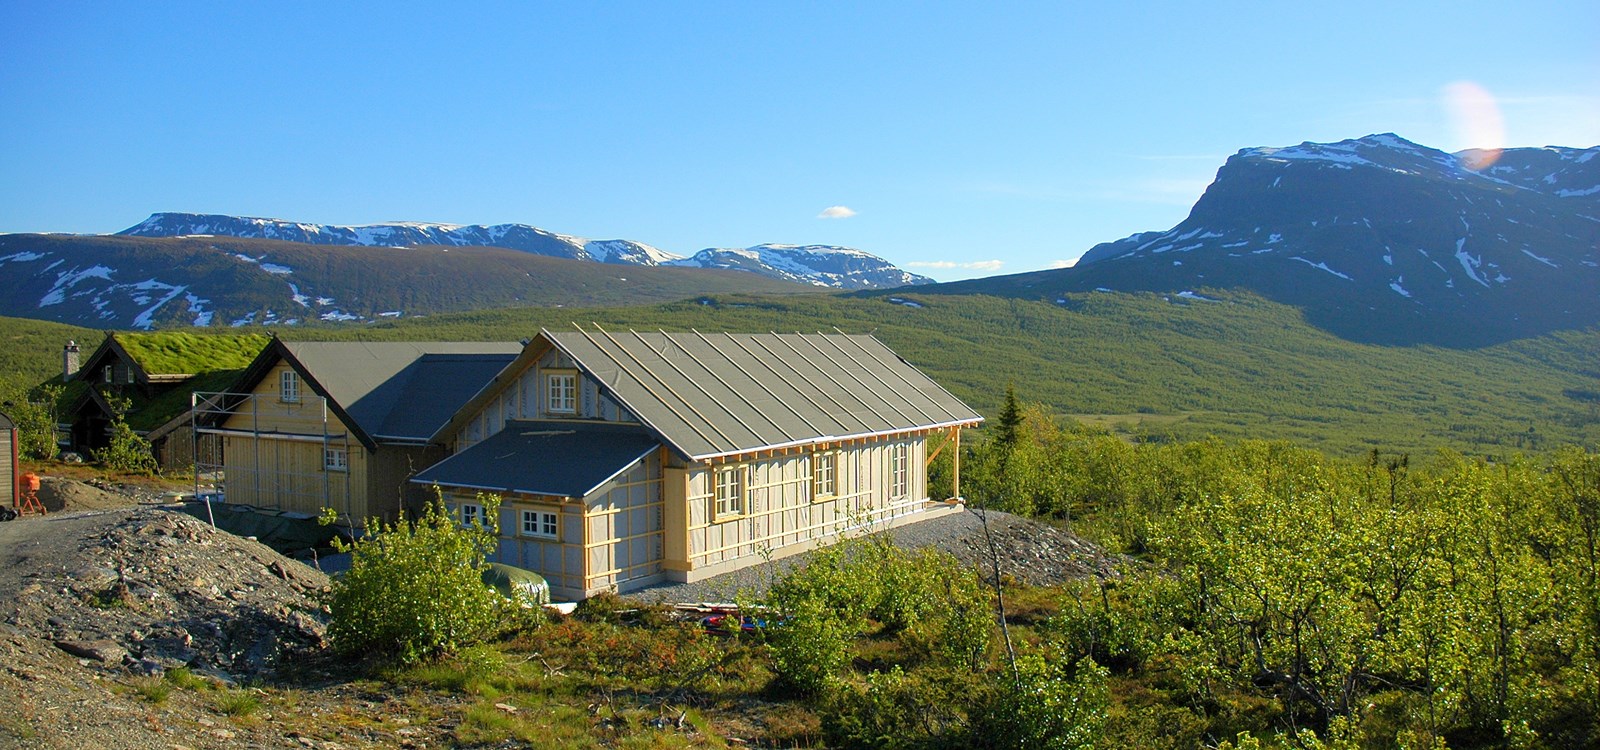 Fleire av dei ledige jobbane inkluderer hyttebygging med utsikt. Foto: Ivar Hagerup